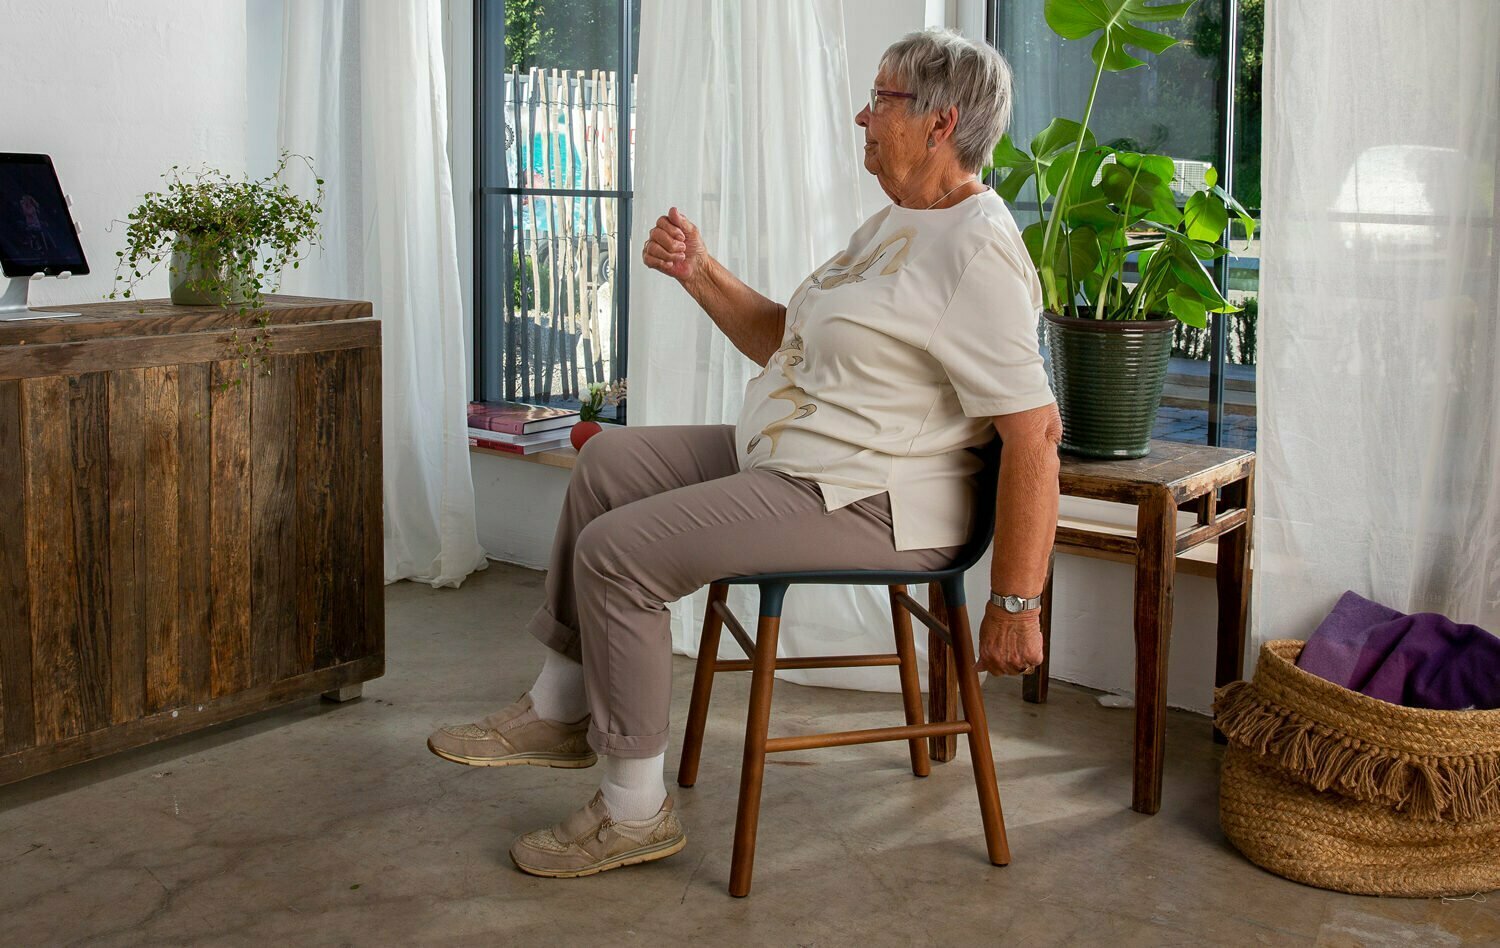 En eldre dame sitter på en stol i stua mens hun beveger på armer og ben. Foran seg på en sjenk har hun Berntsen Beinlaus, en ipad som hjelper henne med treningen.